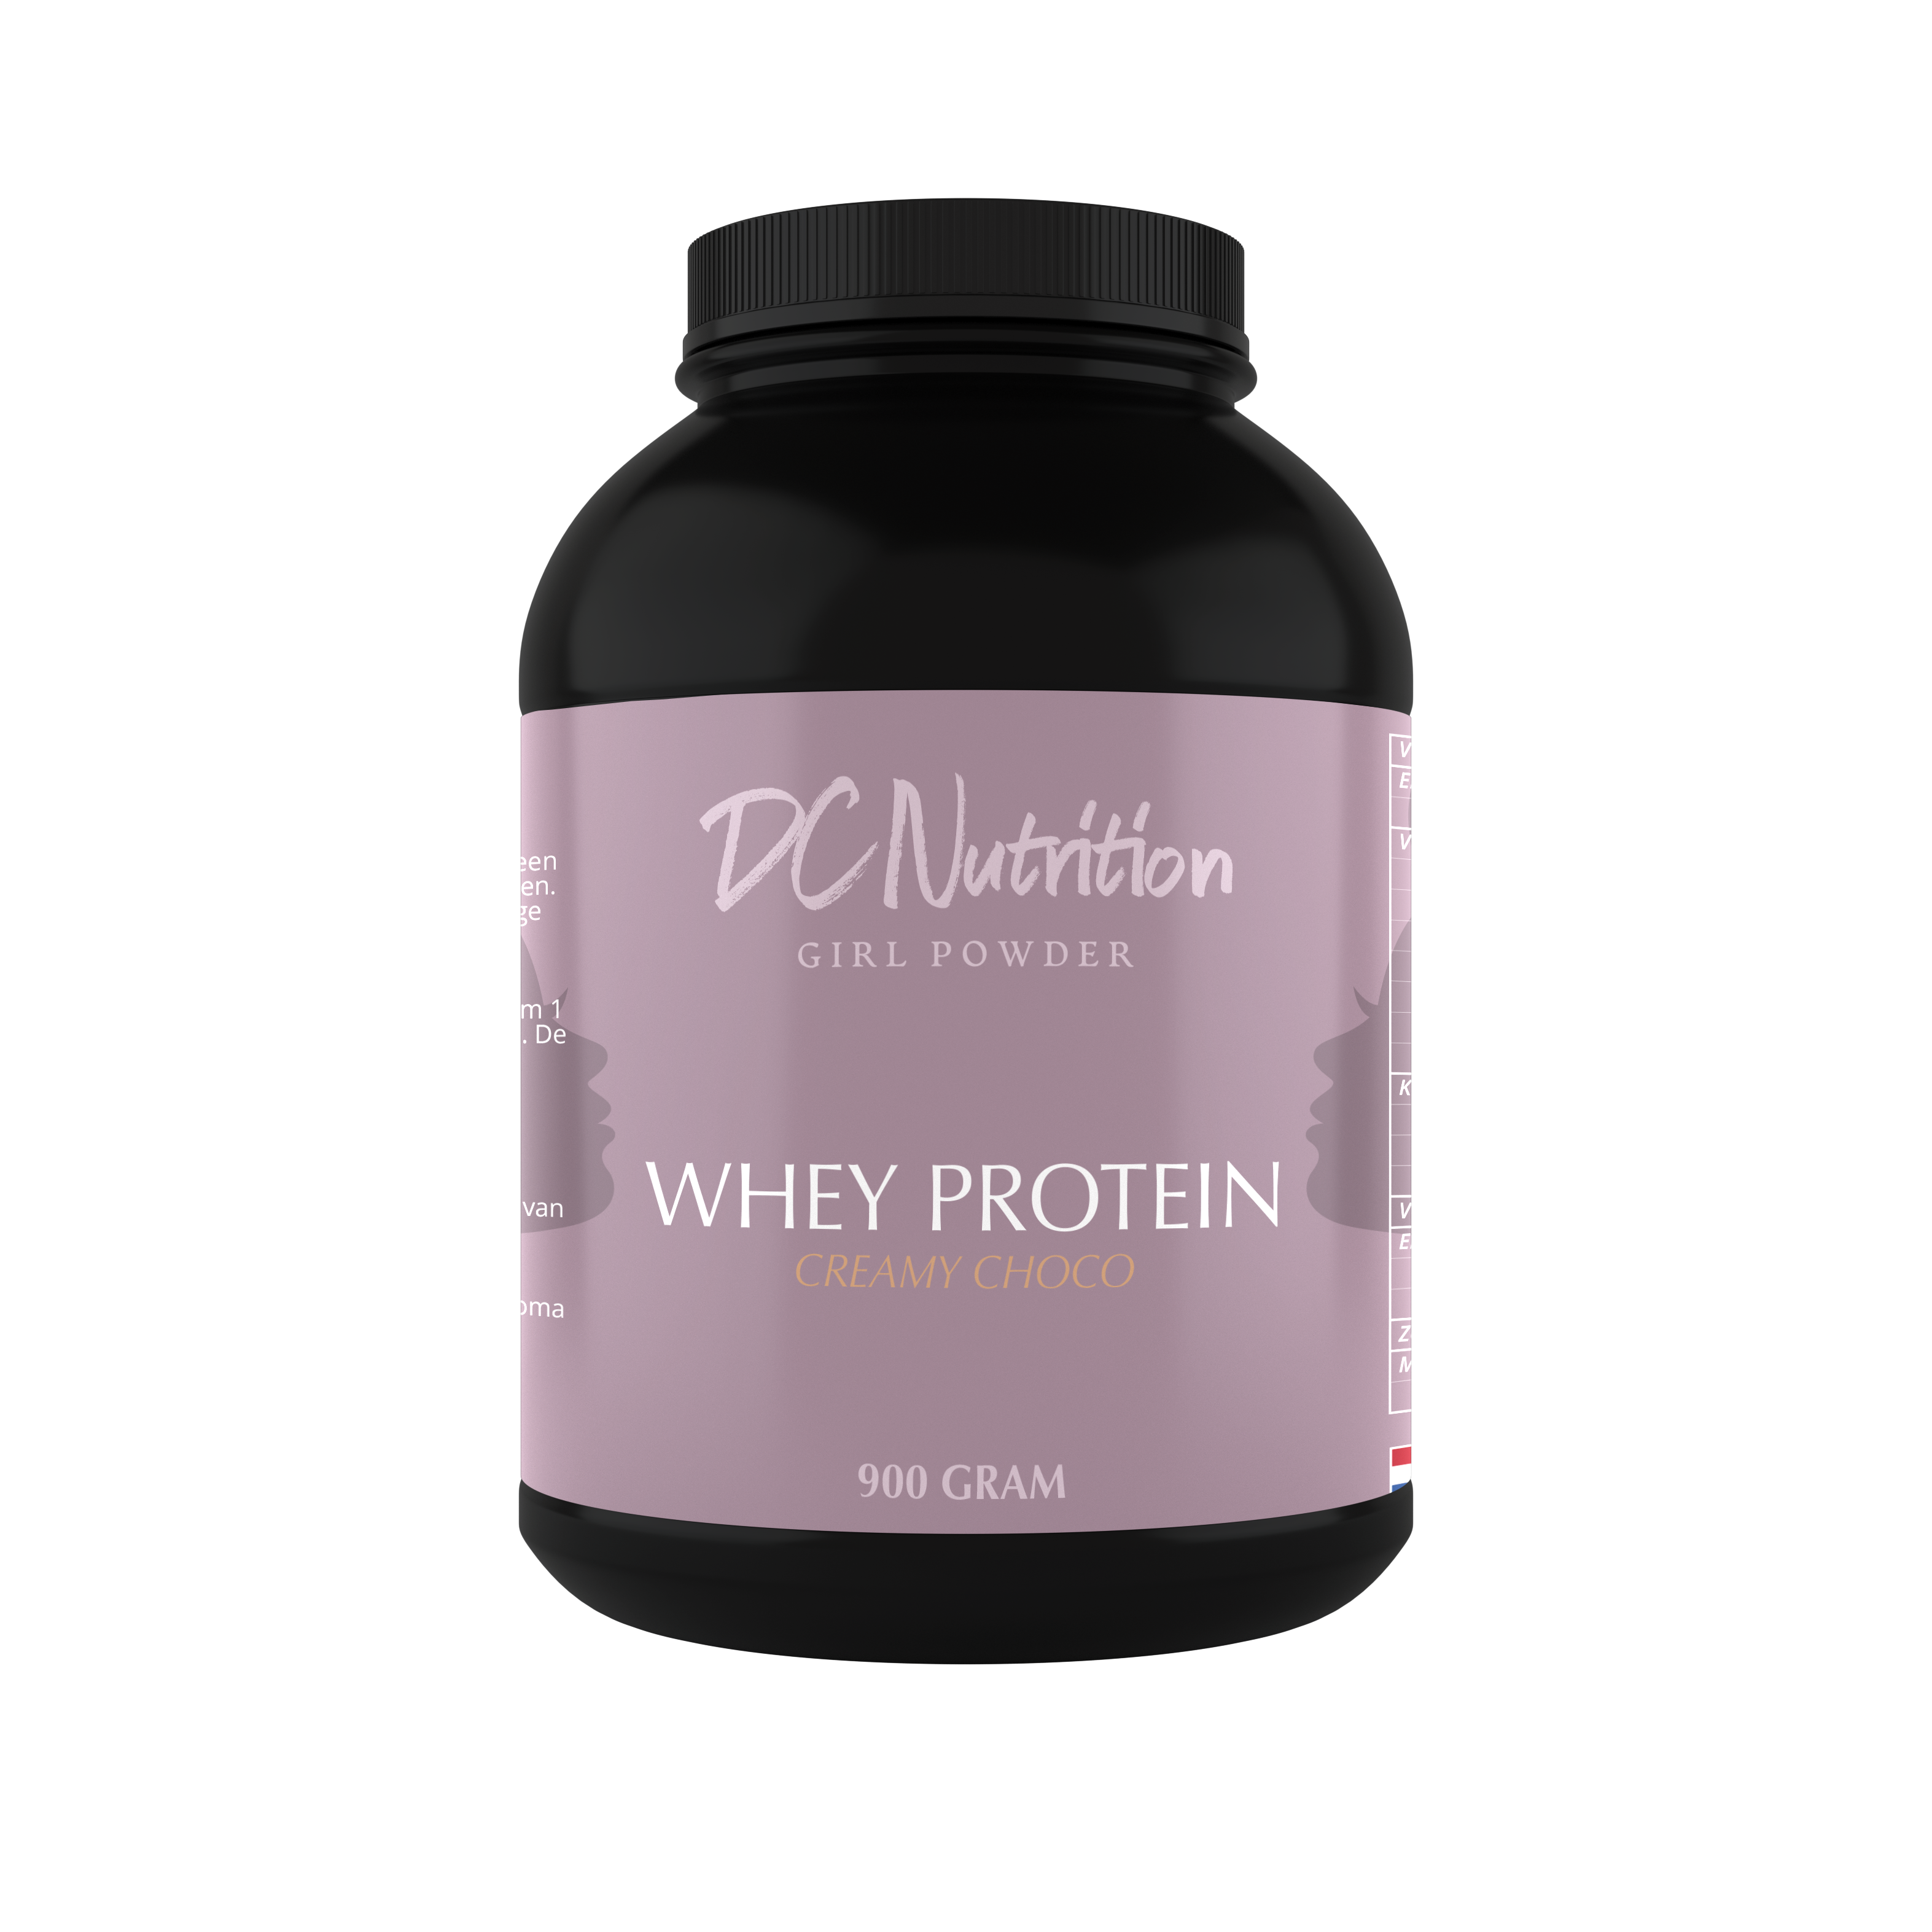 Whey Protein (900 gram) - DcNutrition